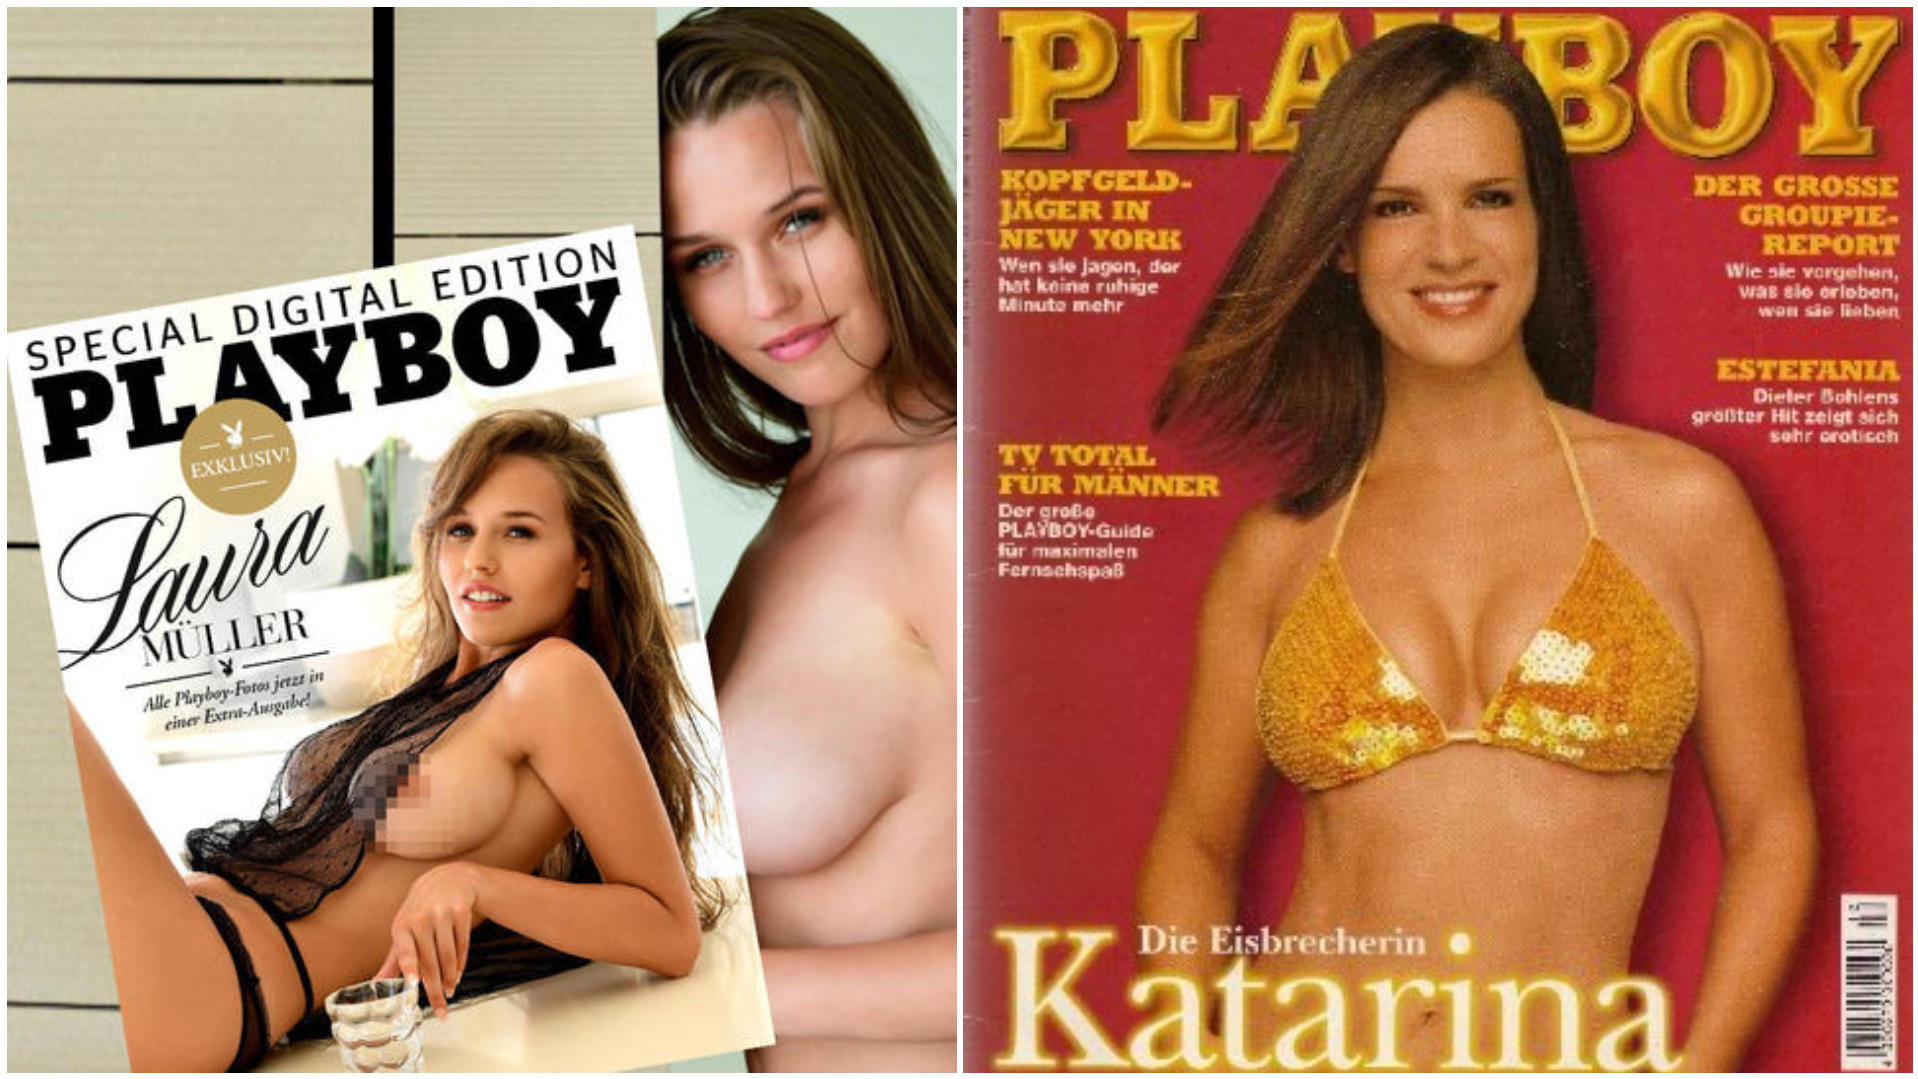 Playboy promis Fotos: Diese